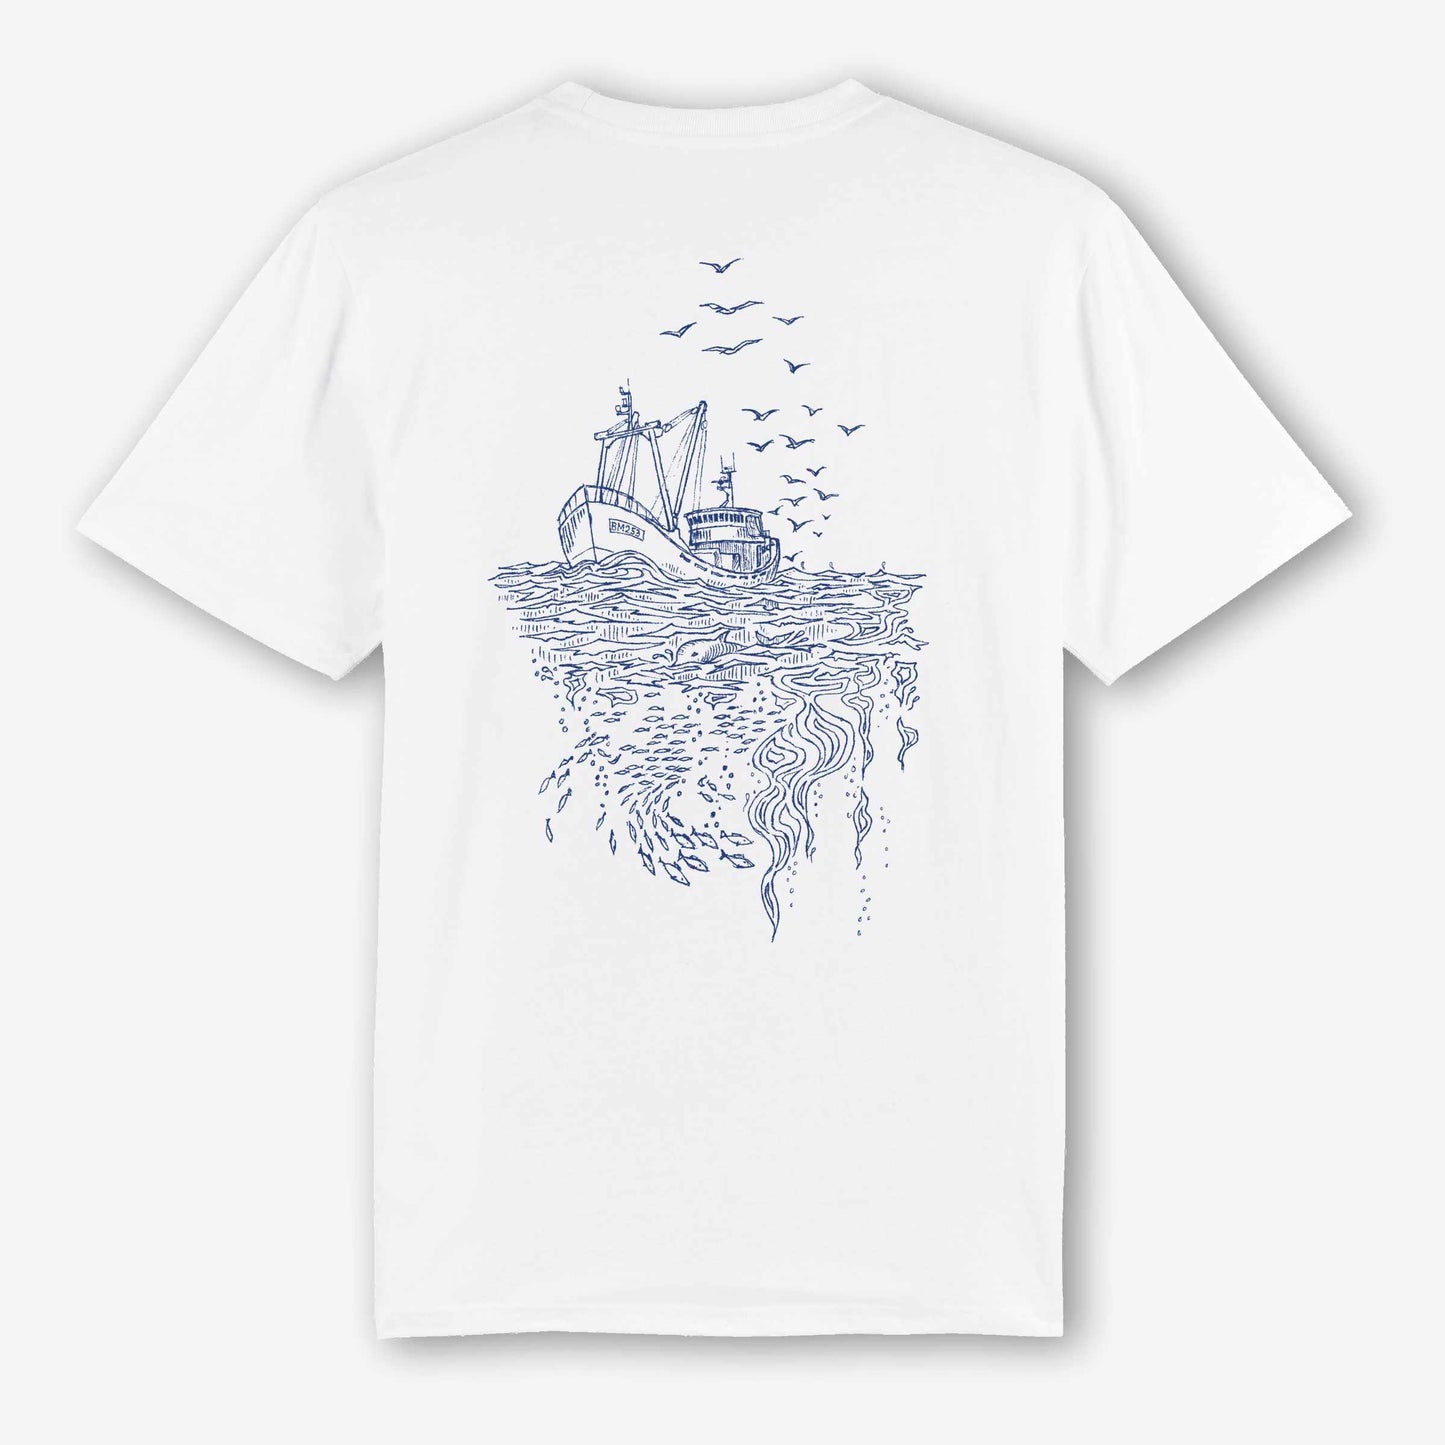 Brixham Fishing Boat Tee - Unisex Sustainable White T-shirt